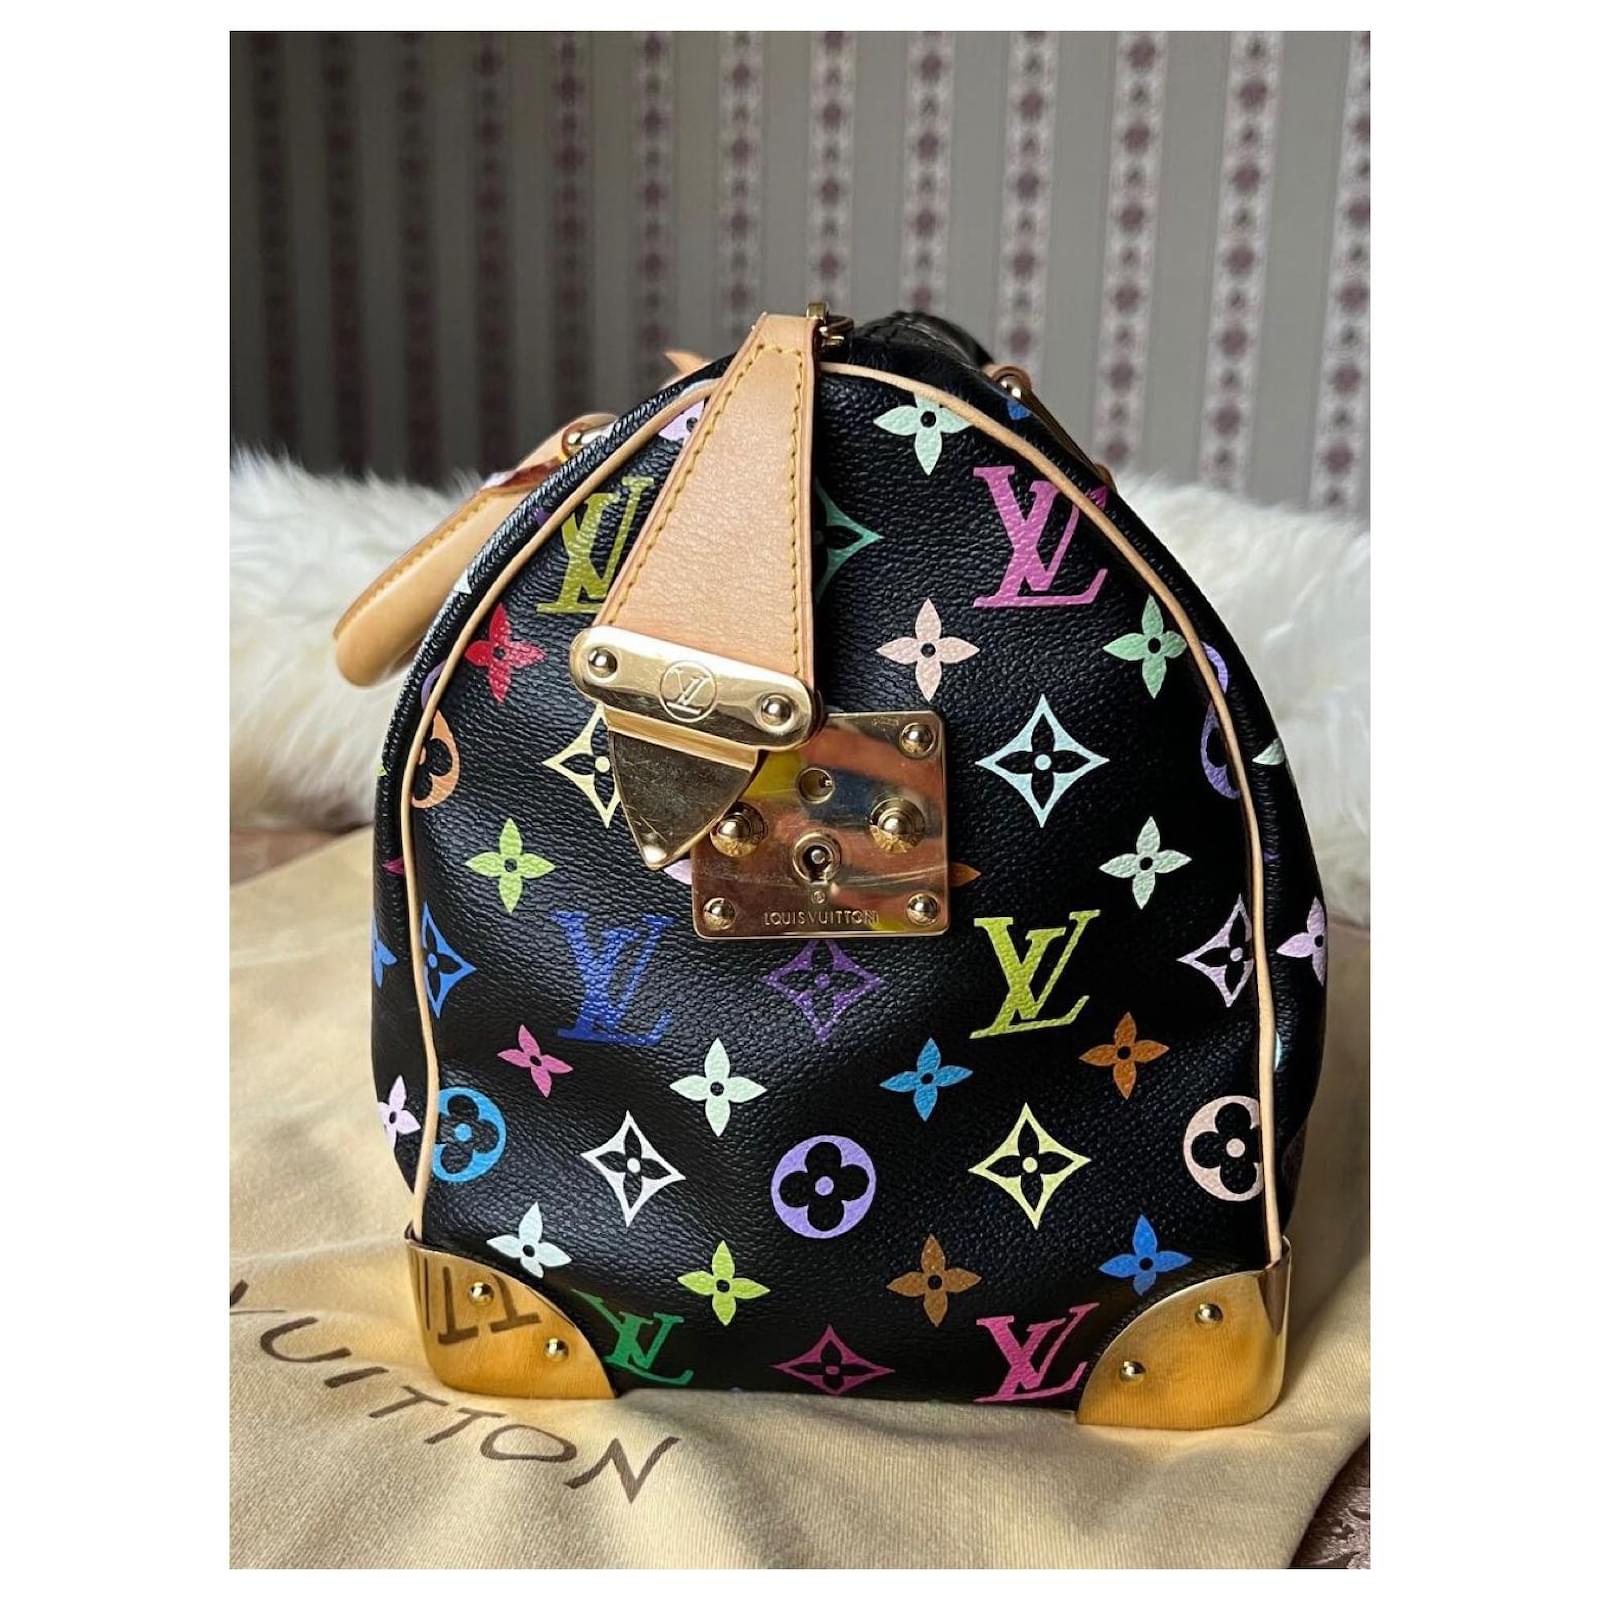 Louis Vuitton Rare Takashi Murakami Speedy Handbag